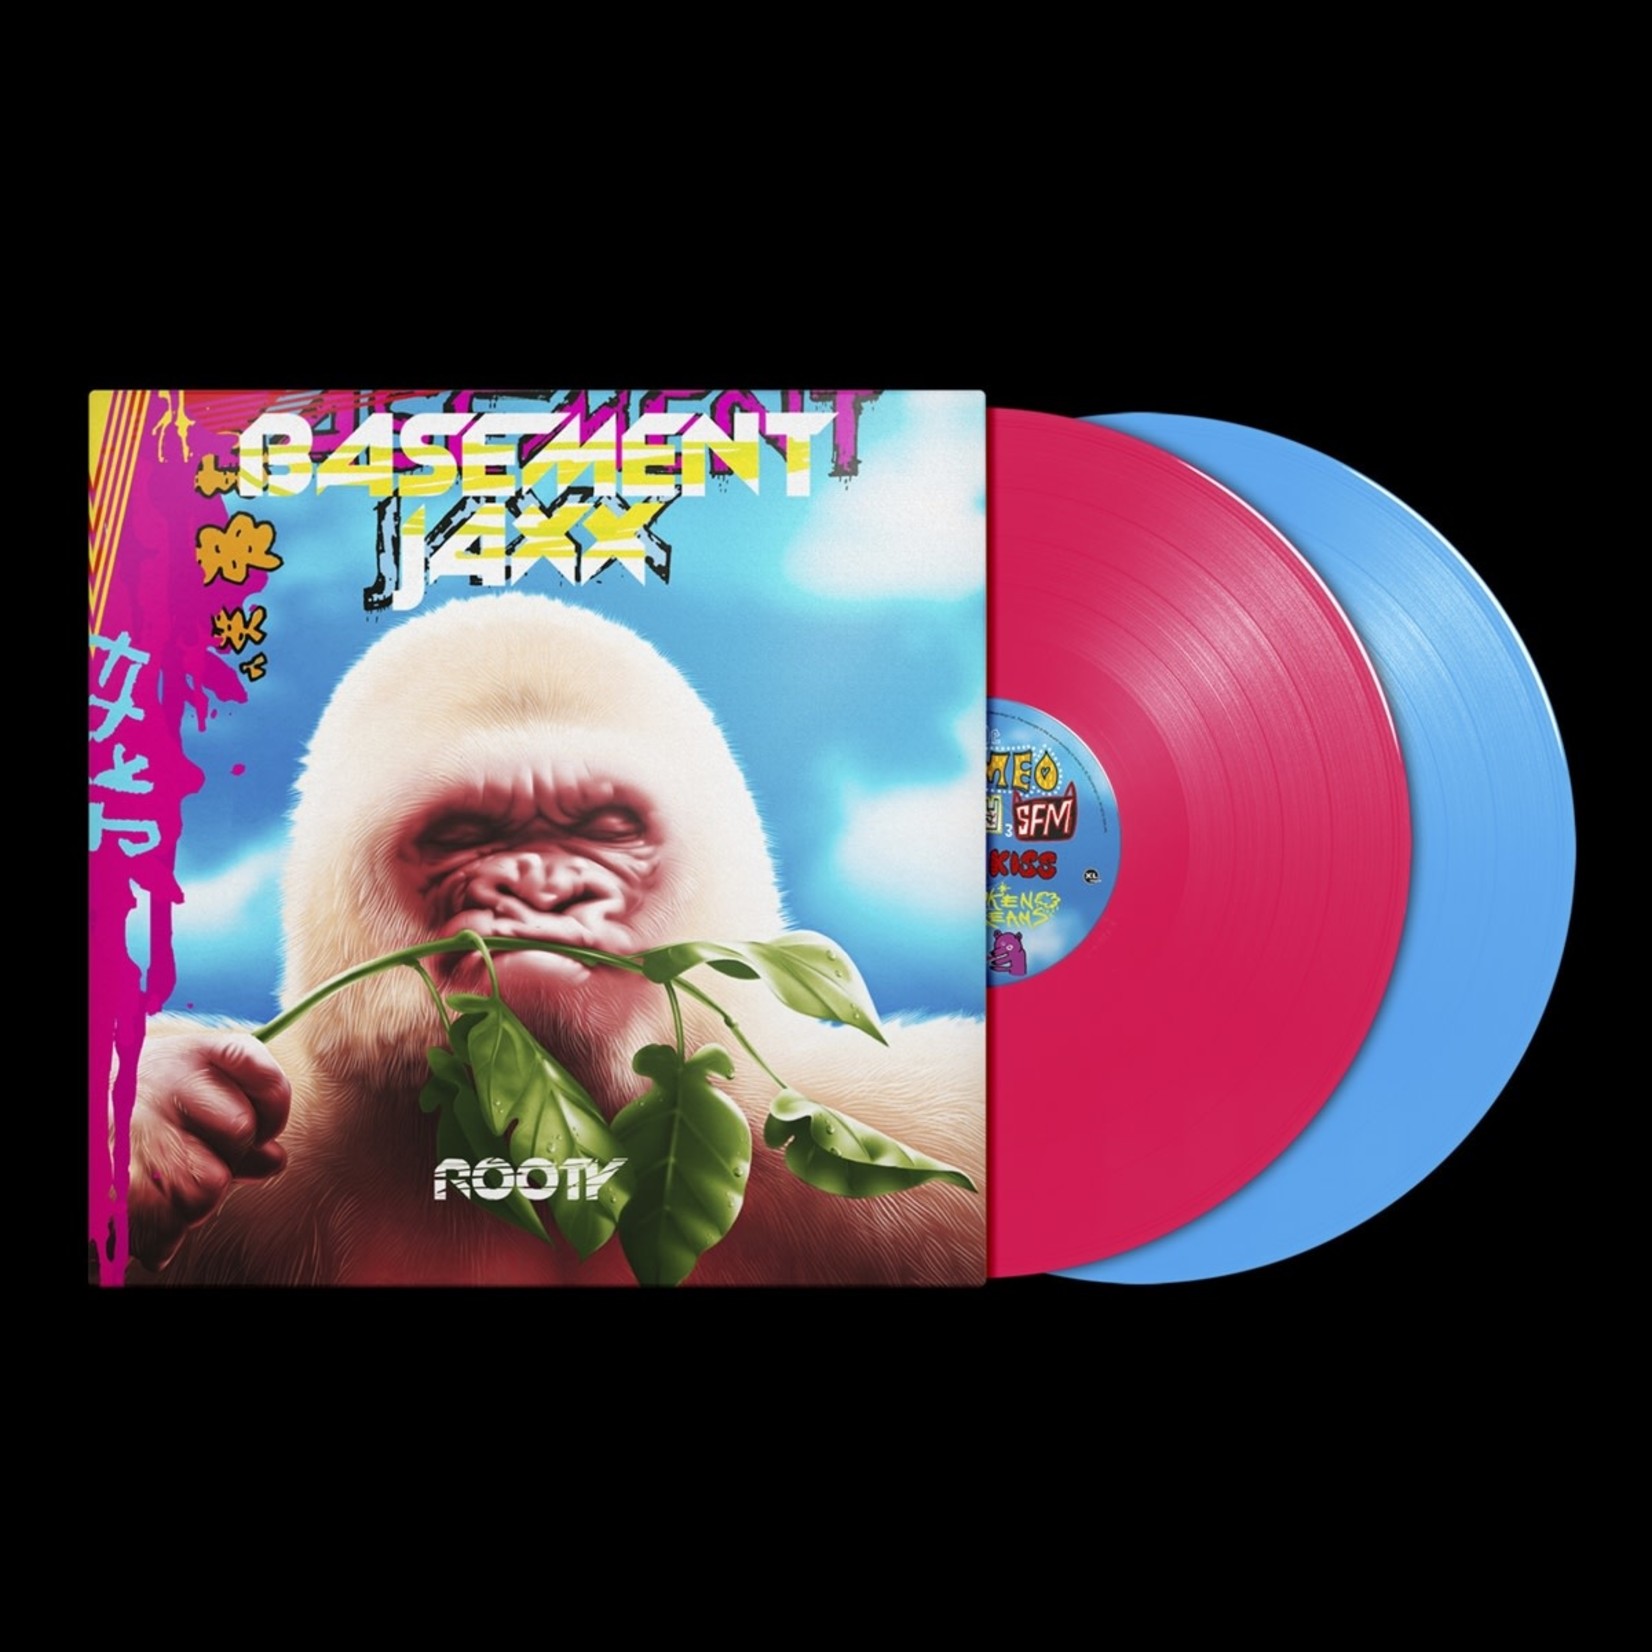 [New] Basement Jaxx - Rooty (2LP, pink vinyl, blue vinyl)